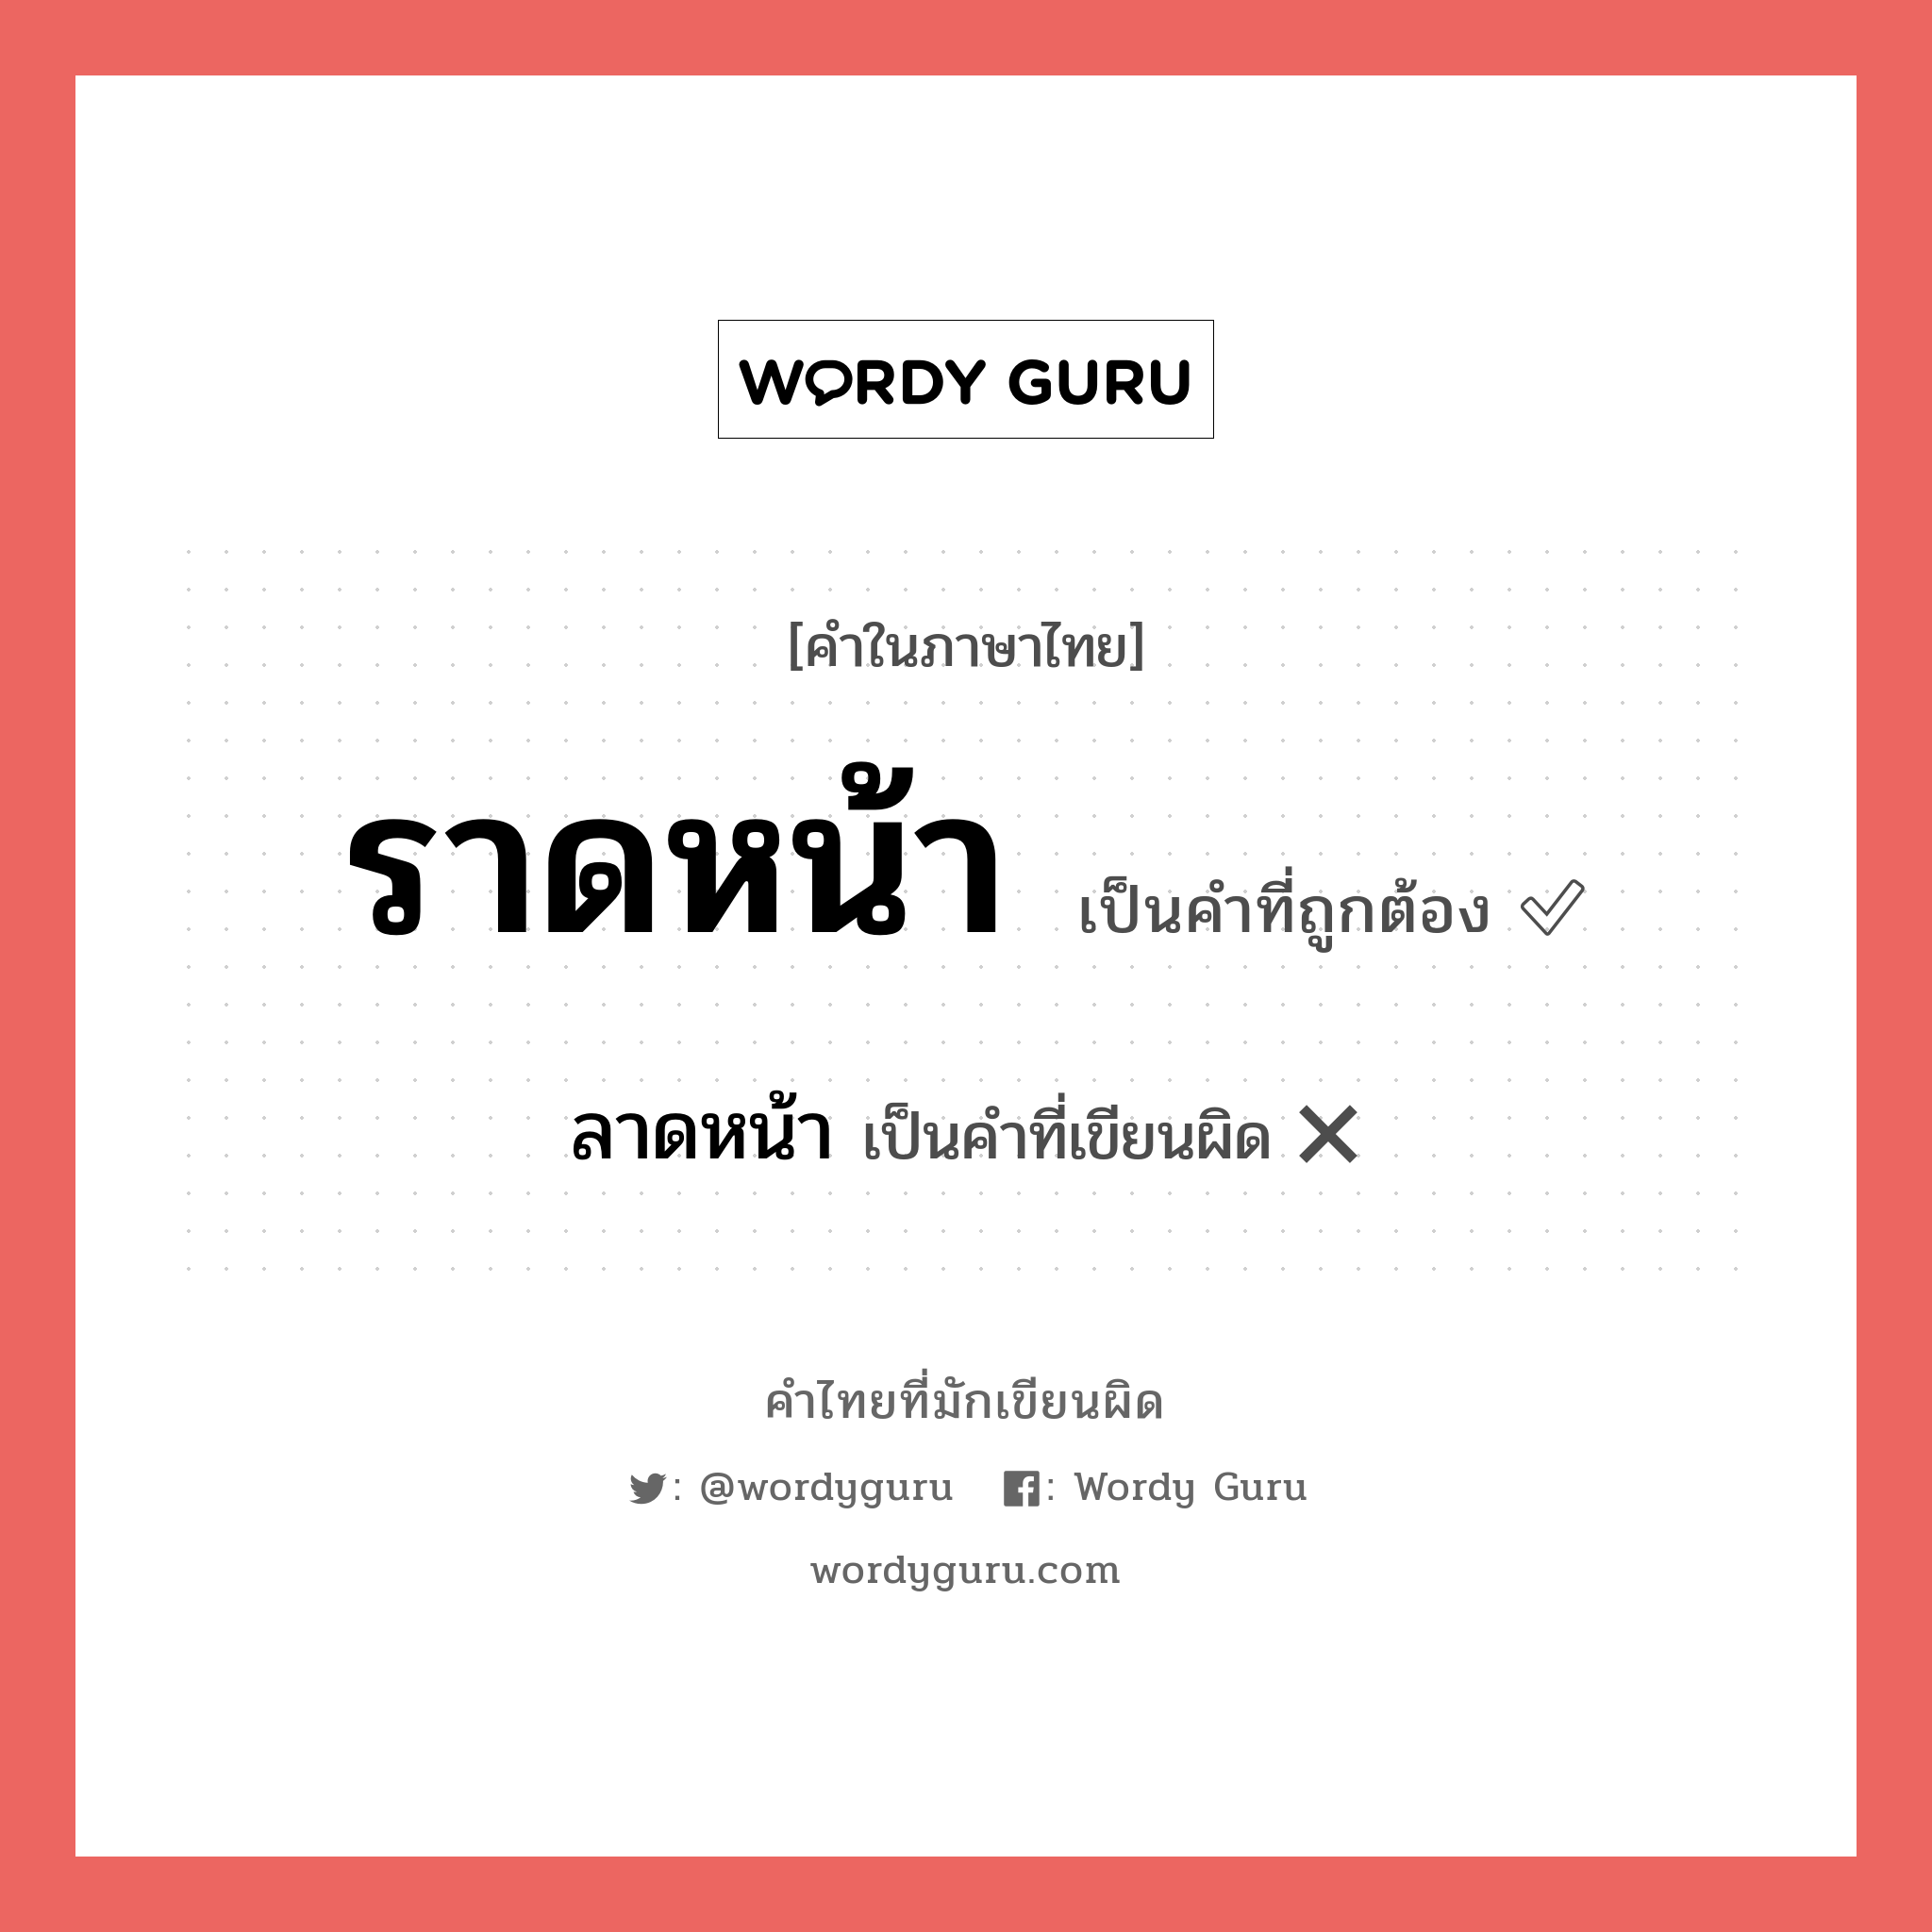 ลาดหน้า หรือ ราดหน้า คำไหนเขียนถูก?, คำในภาษาไทยที่มักเขียนผิด ลาดหน้า คำที่ผิด ❌ ราดหน้า